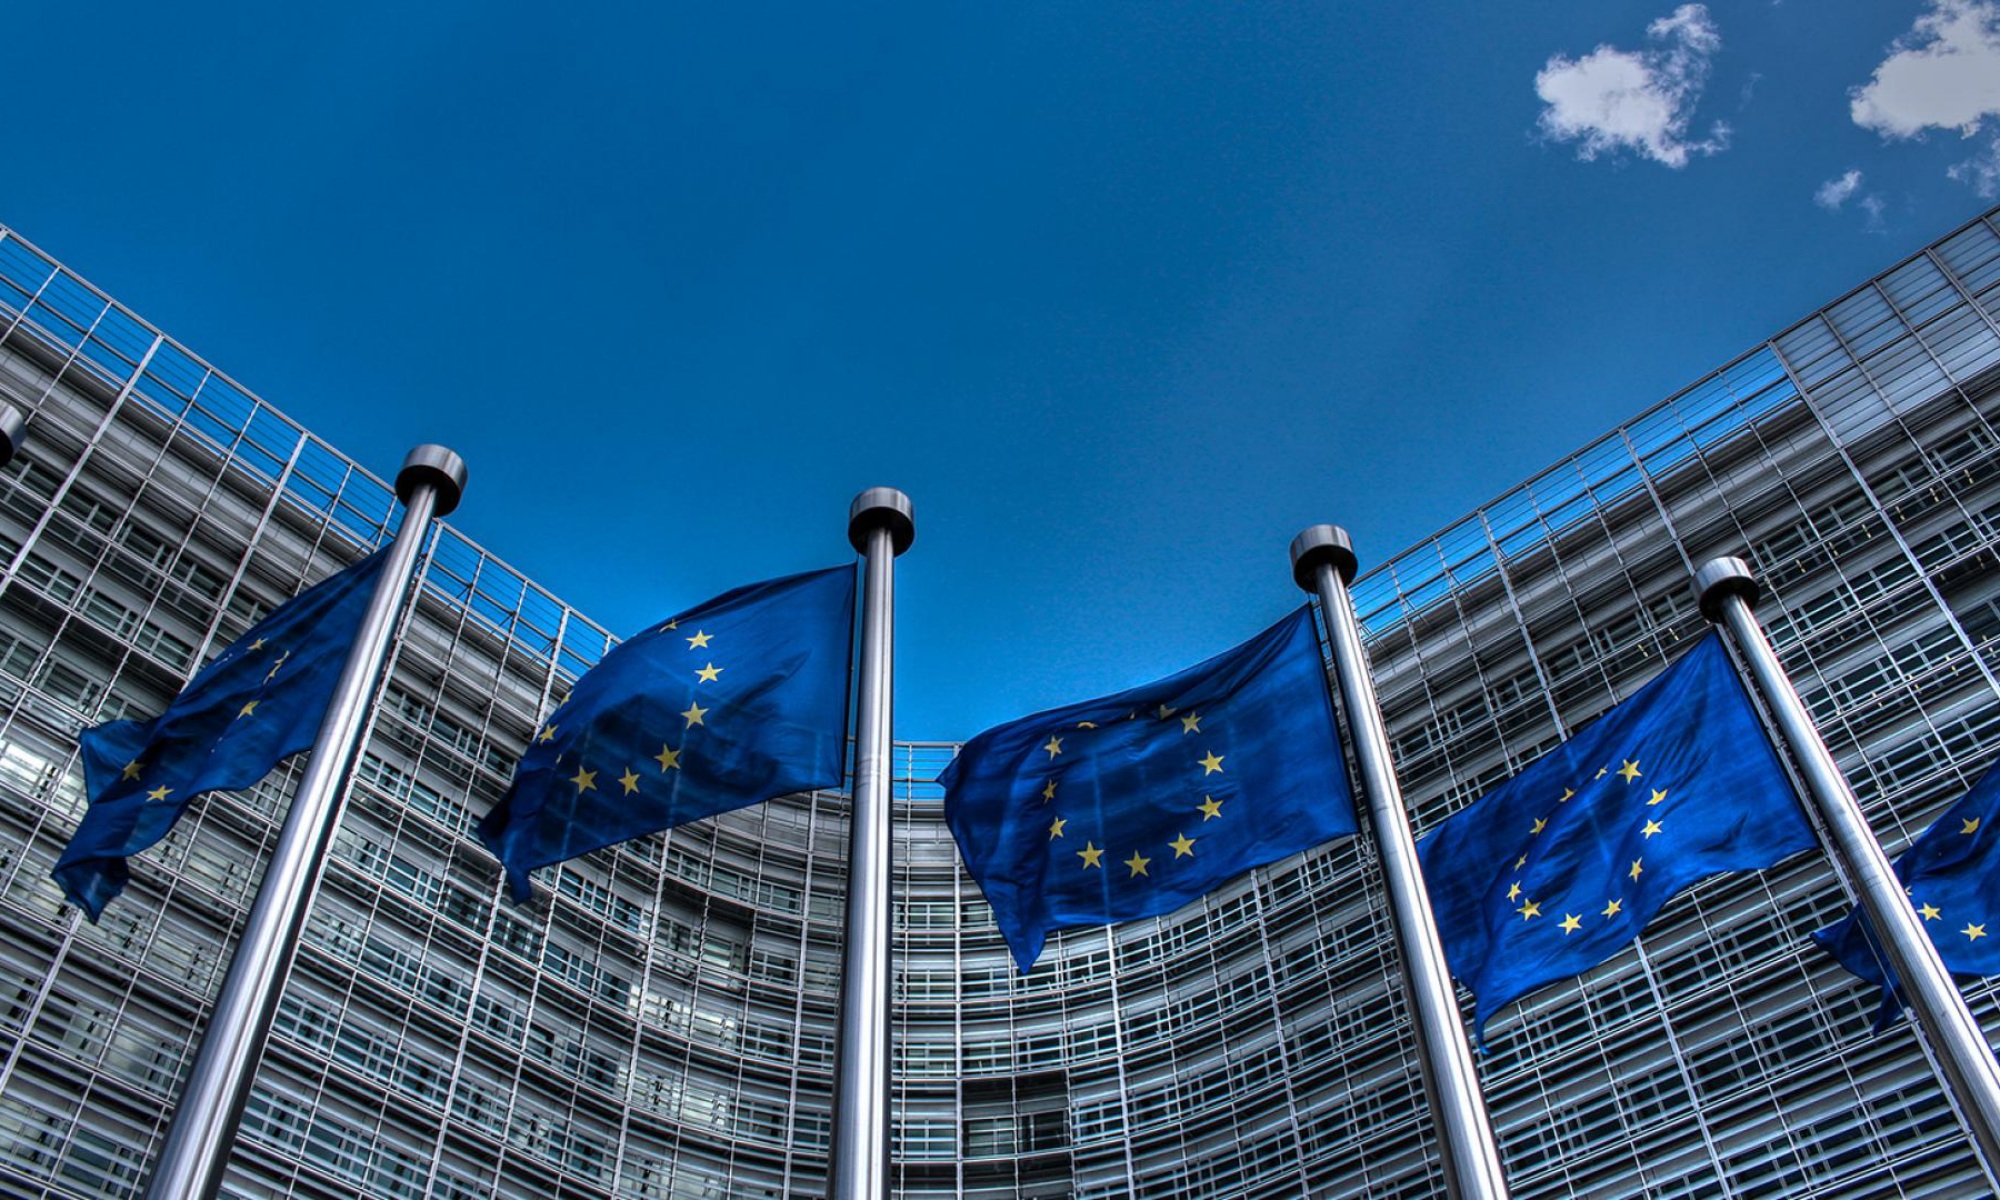 Por primera vez, la Comisión Europea autoriza ayudas para evitar la fuga de empresas críticas de la industria automotriz.